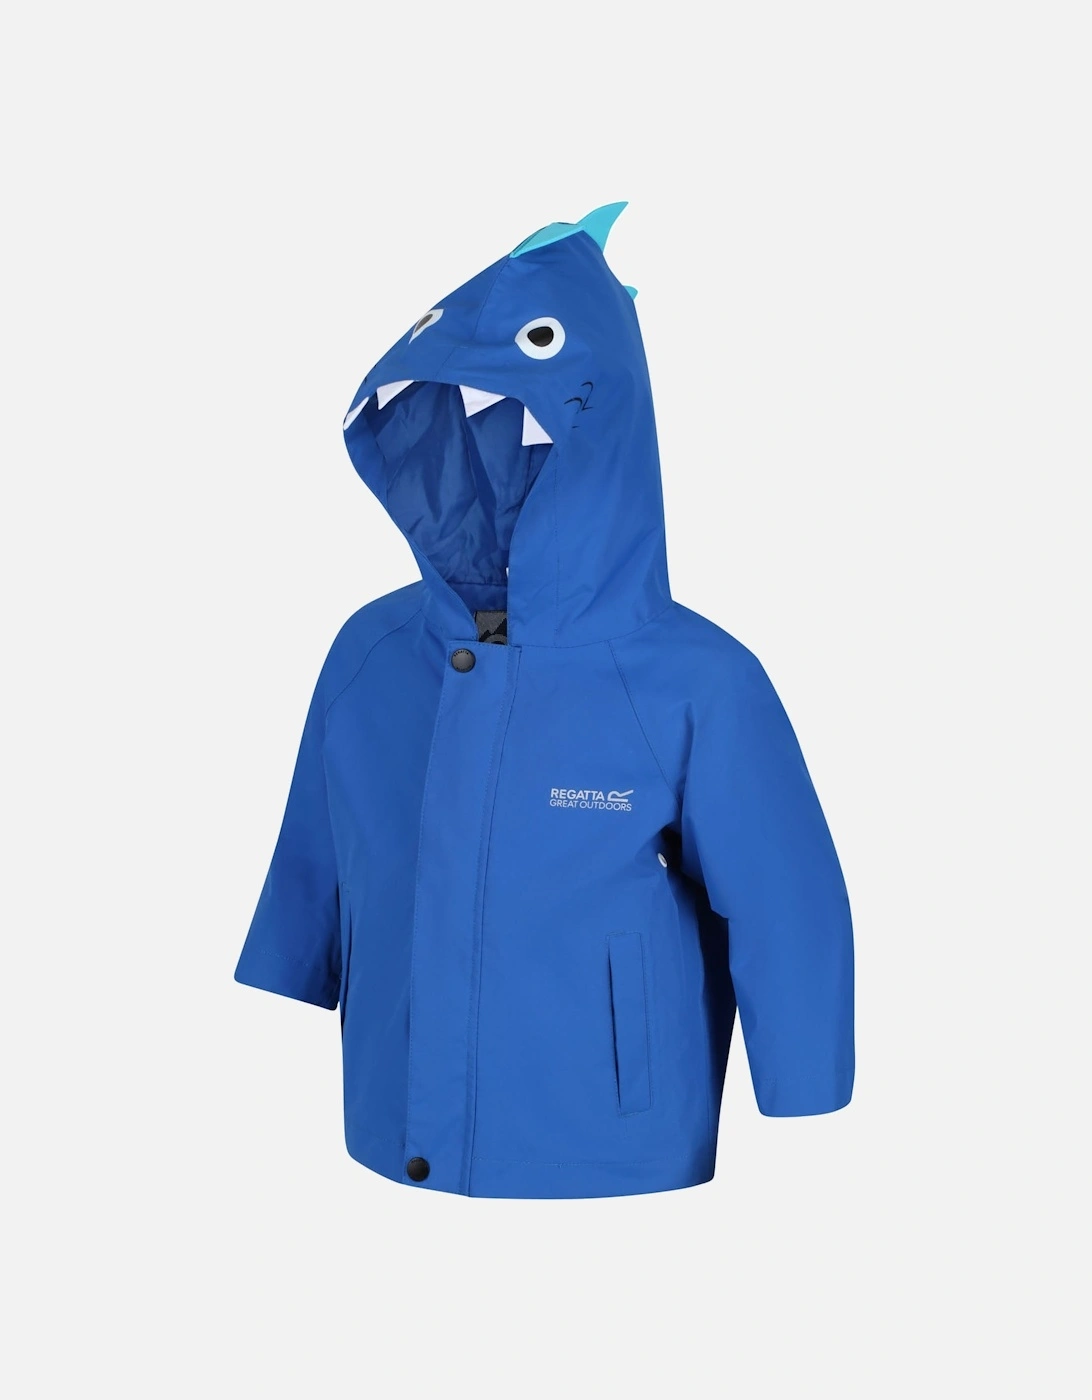 Kids Animal Print Hooded Waterproof Jacket